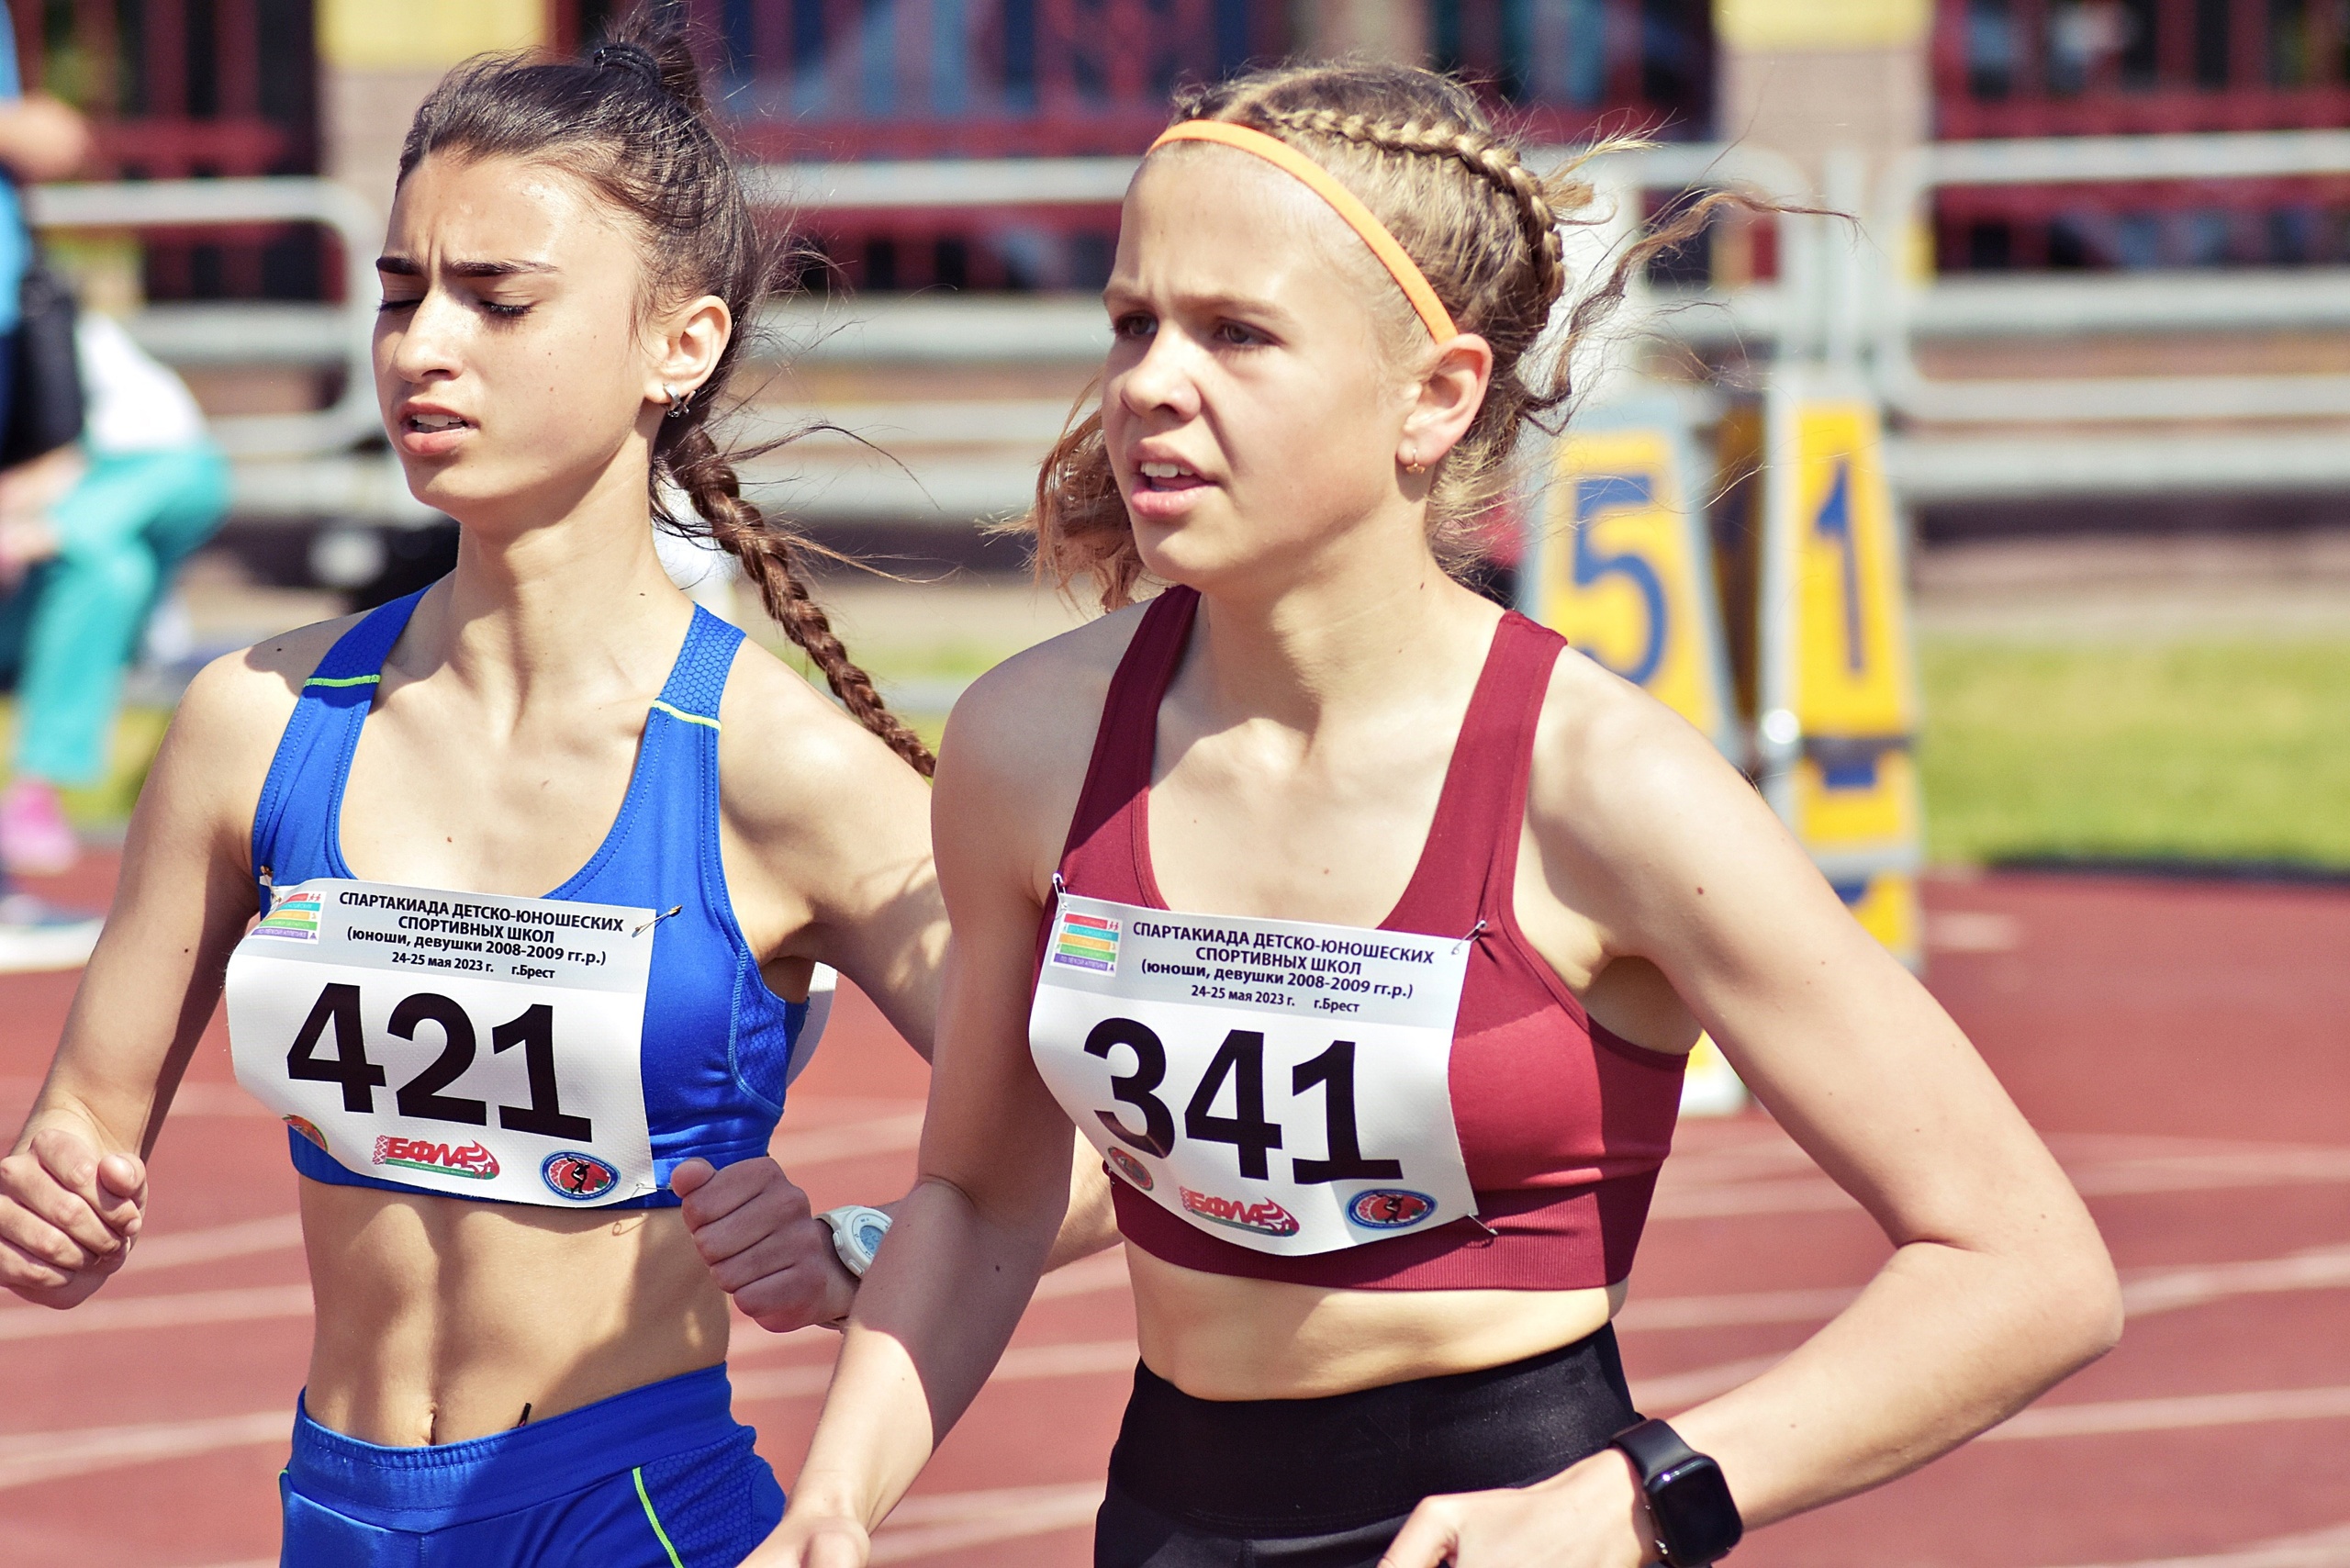 ОСК “Брестский” принимал участников спартакиада ДЮСШ Республики Беларусь по легкой атлетике среди юношей и девушек 2008-2009 гг.р.